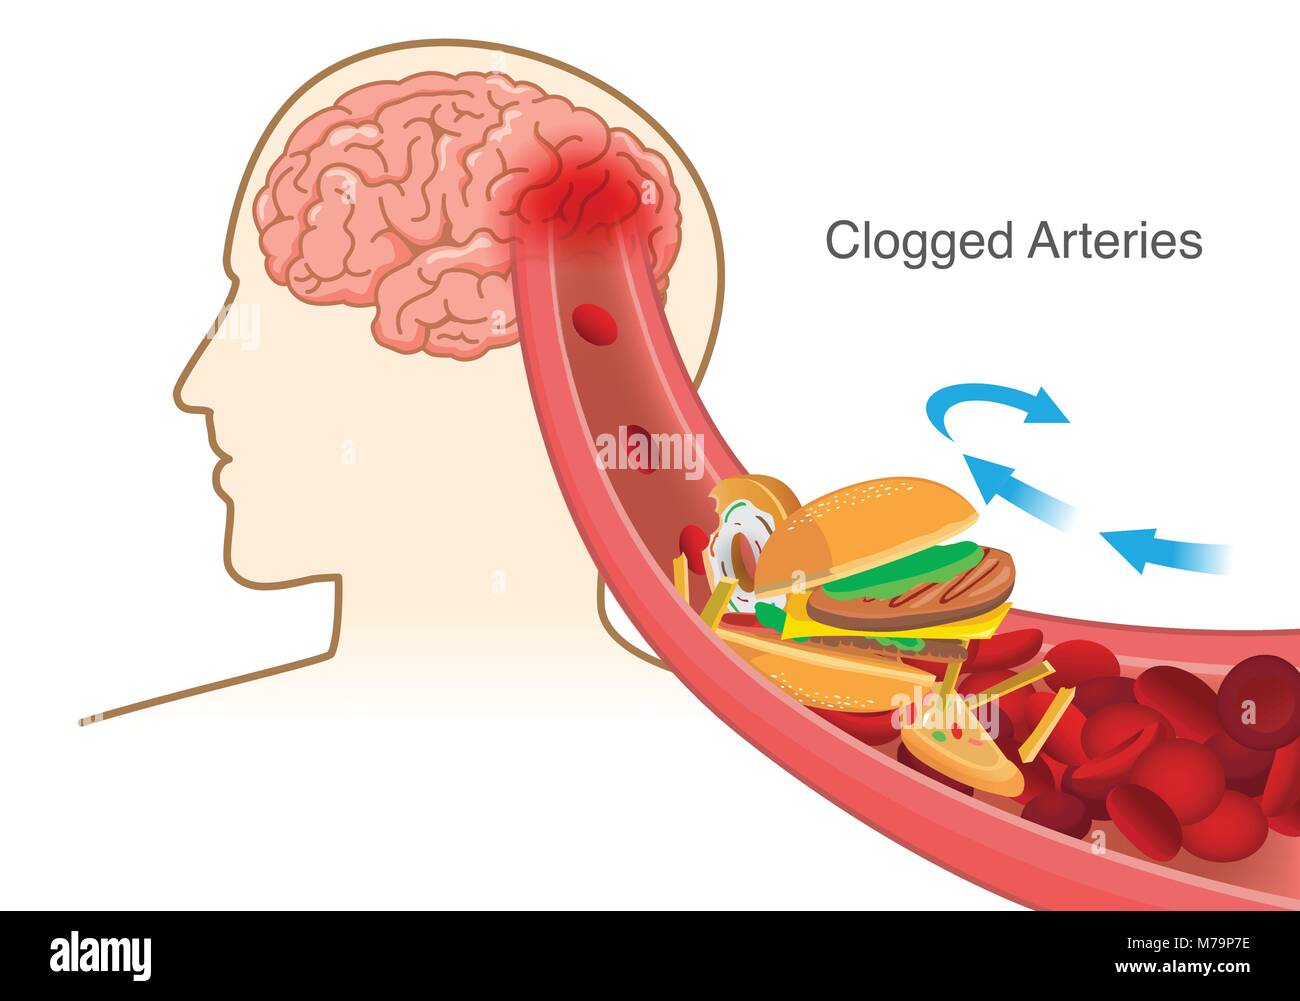 Y pizza, hamburguesas y papas fritas causa glóbulos rojos bloque obstruidas en arteria antes en el cerebro. Ilustración del Vector